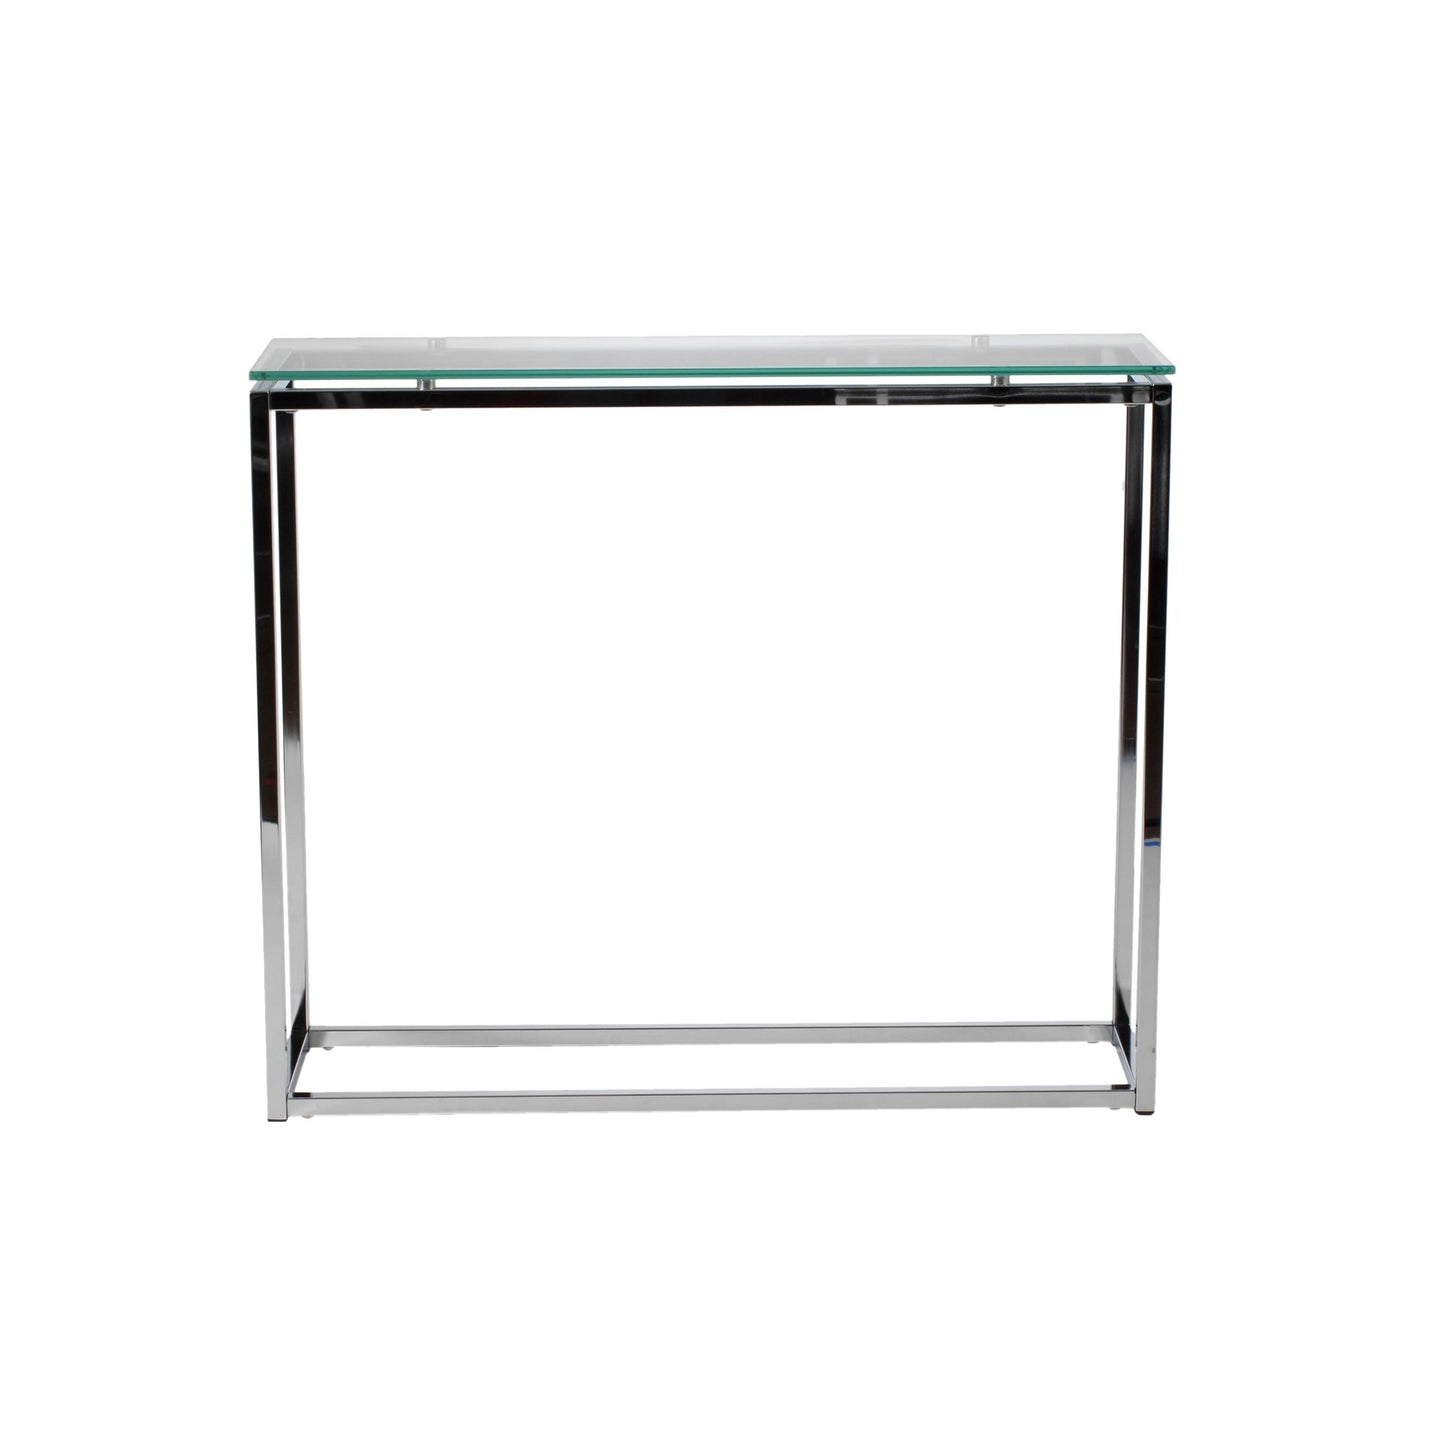 Sandor Console Clear Glass Table w/Chrome Base